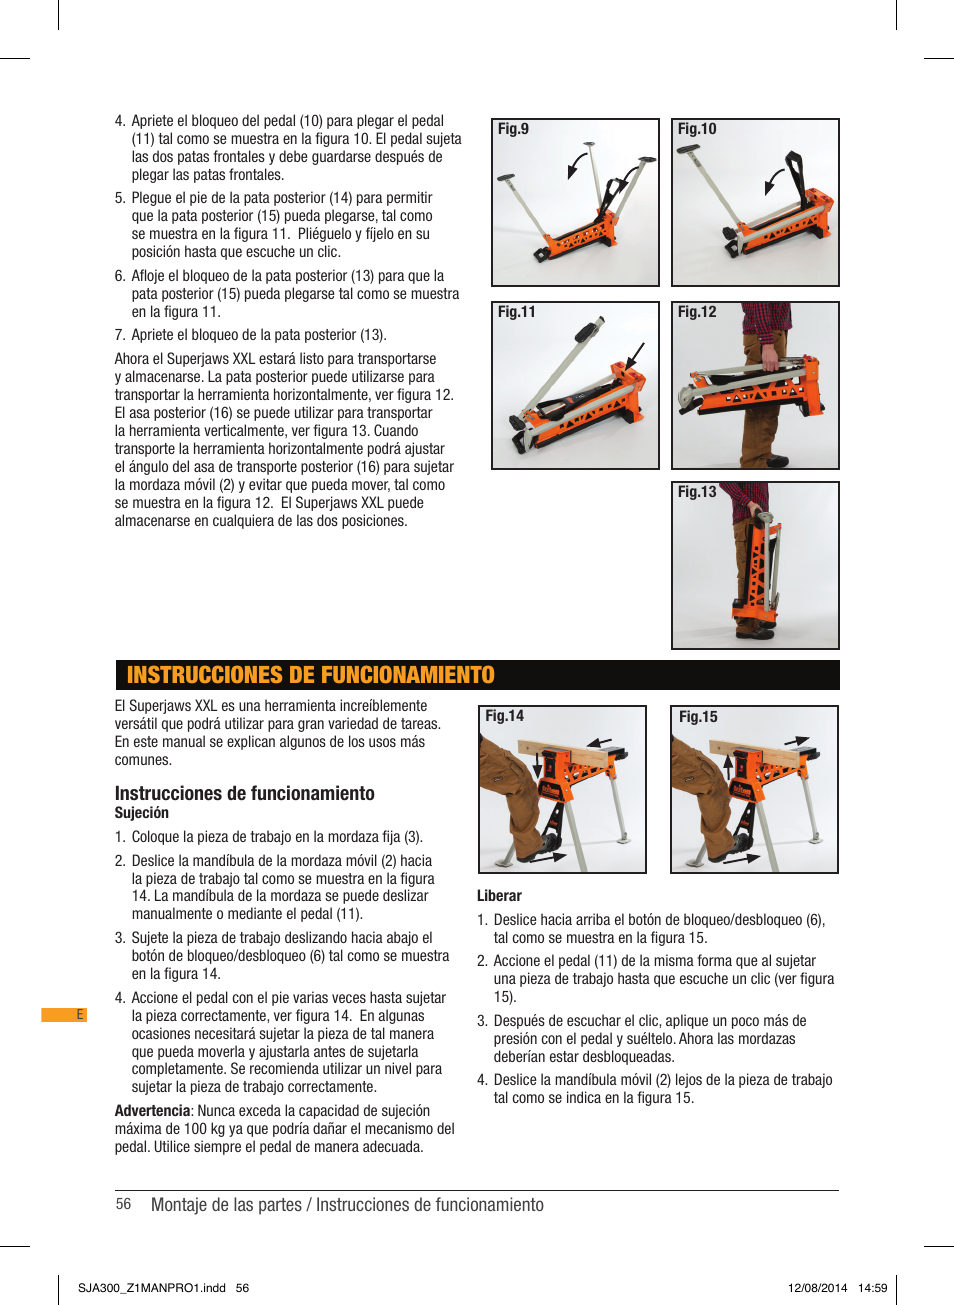 Instrucciones de funcionamiento | Triton SJA 300 User Manual | Page 57 / 62  | Original mode